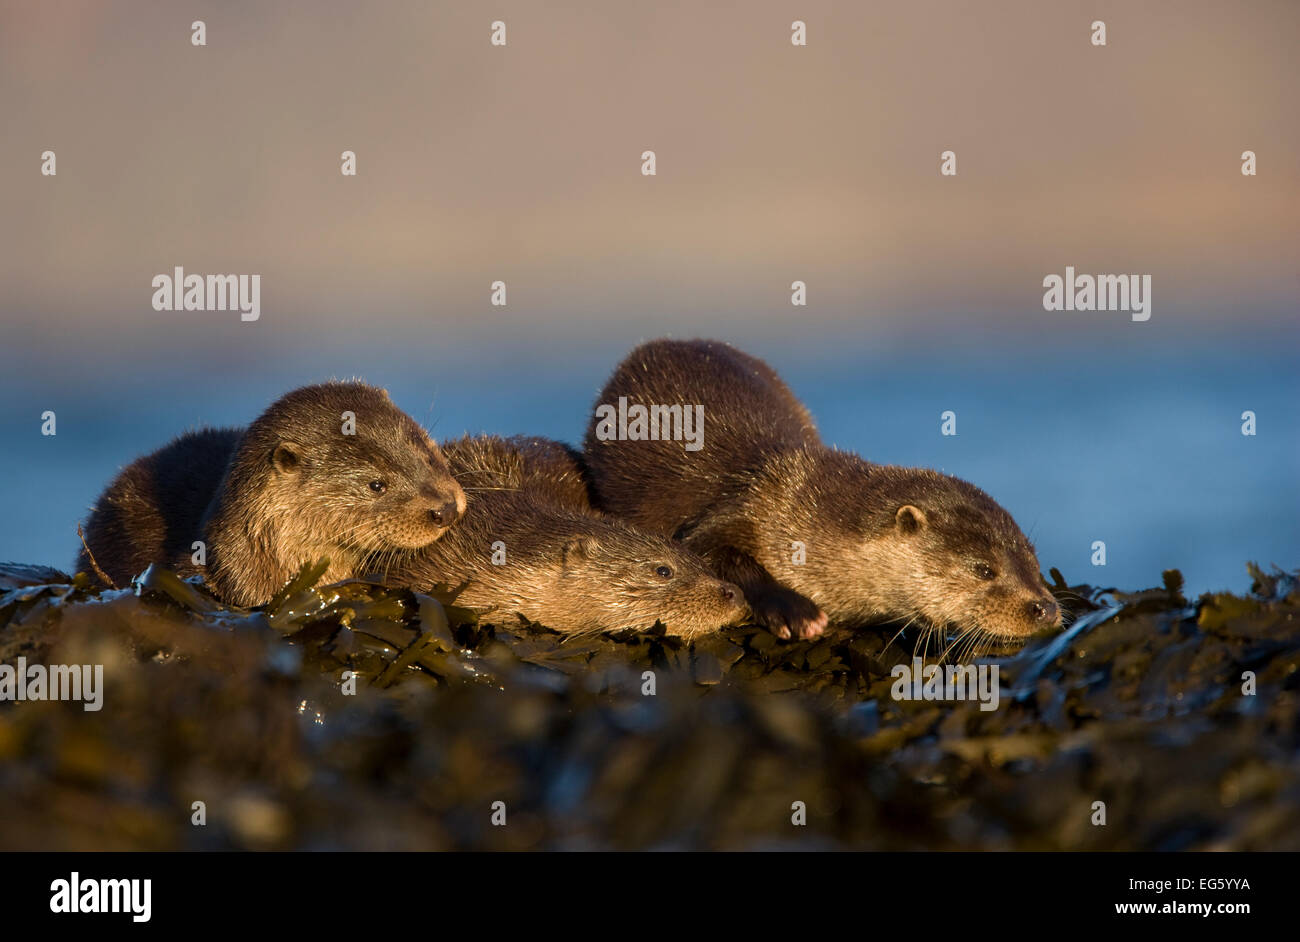 Trois des loutres de rivière (Lutra lutra) reposant sur l'algue, île de Mull, Hébrides intérieures, Écosse, Royaume-Uni, novembre. Années 2020 Livre VISION Plaque. Banque D'Images